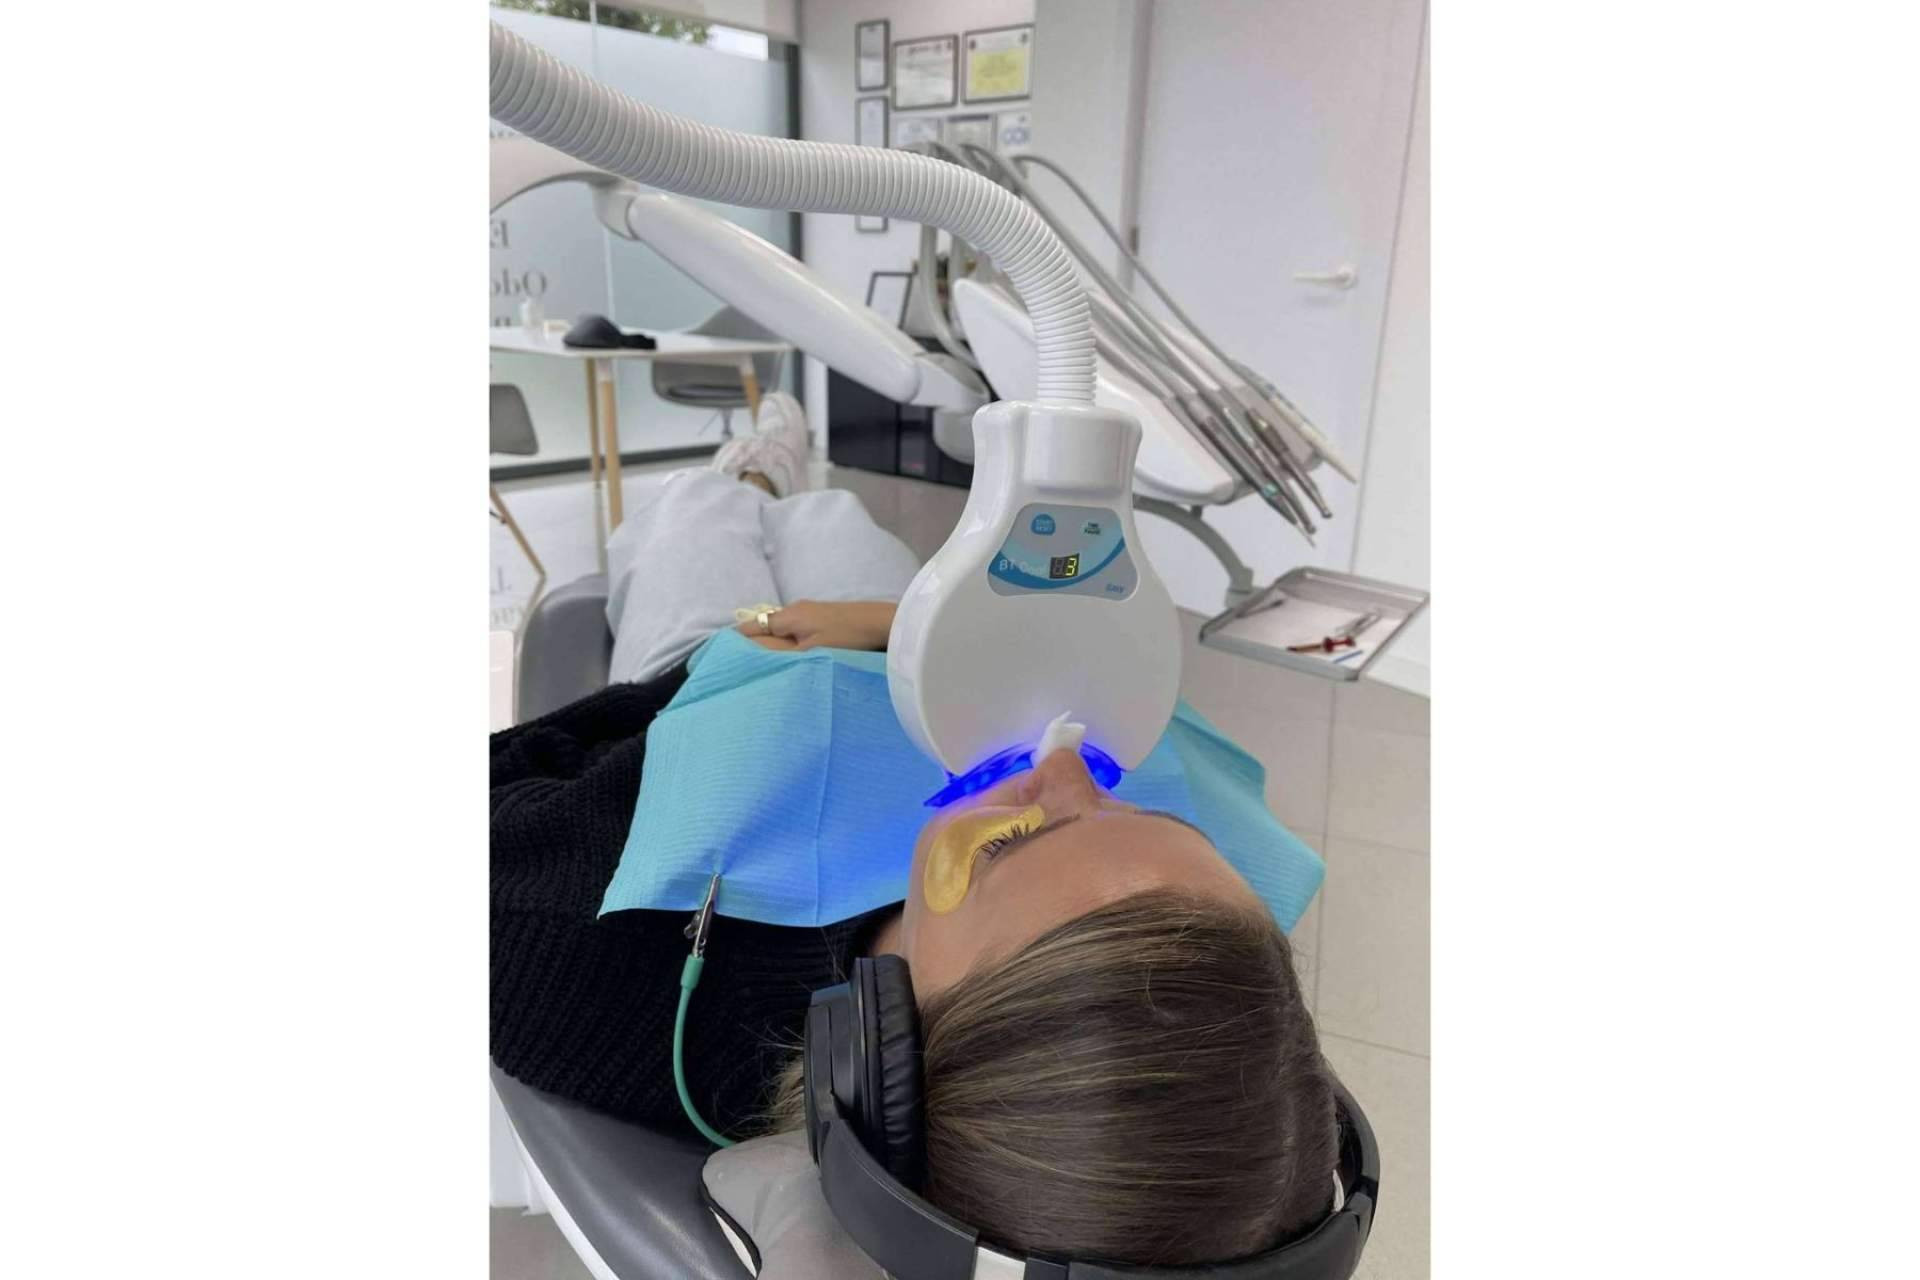  Clínica MG Dental ofrece servicios de higiene y blanqueamiento dental 